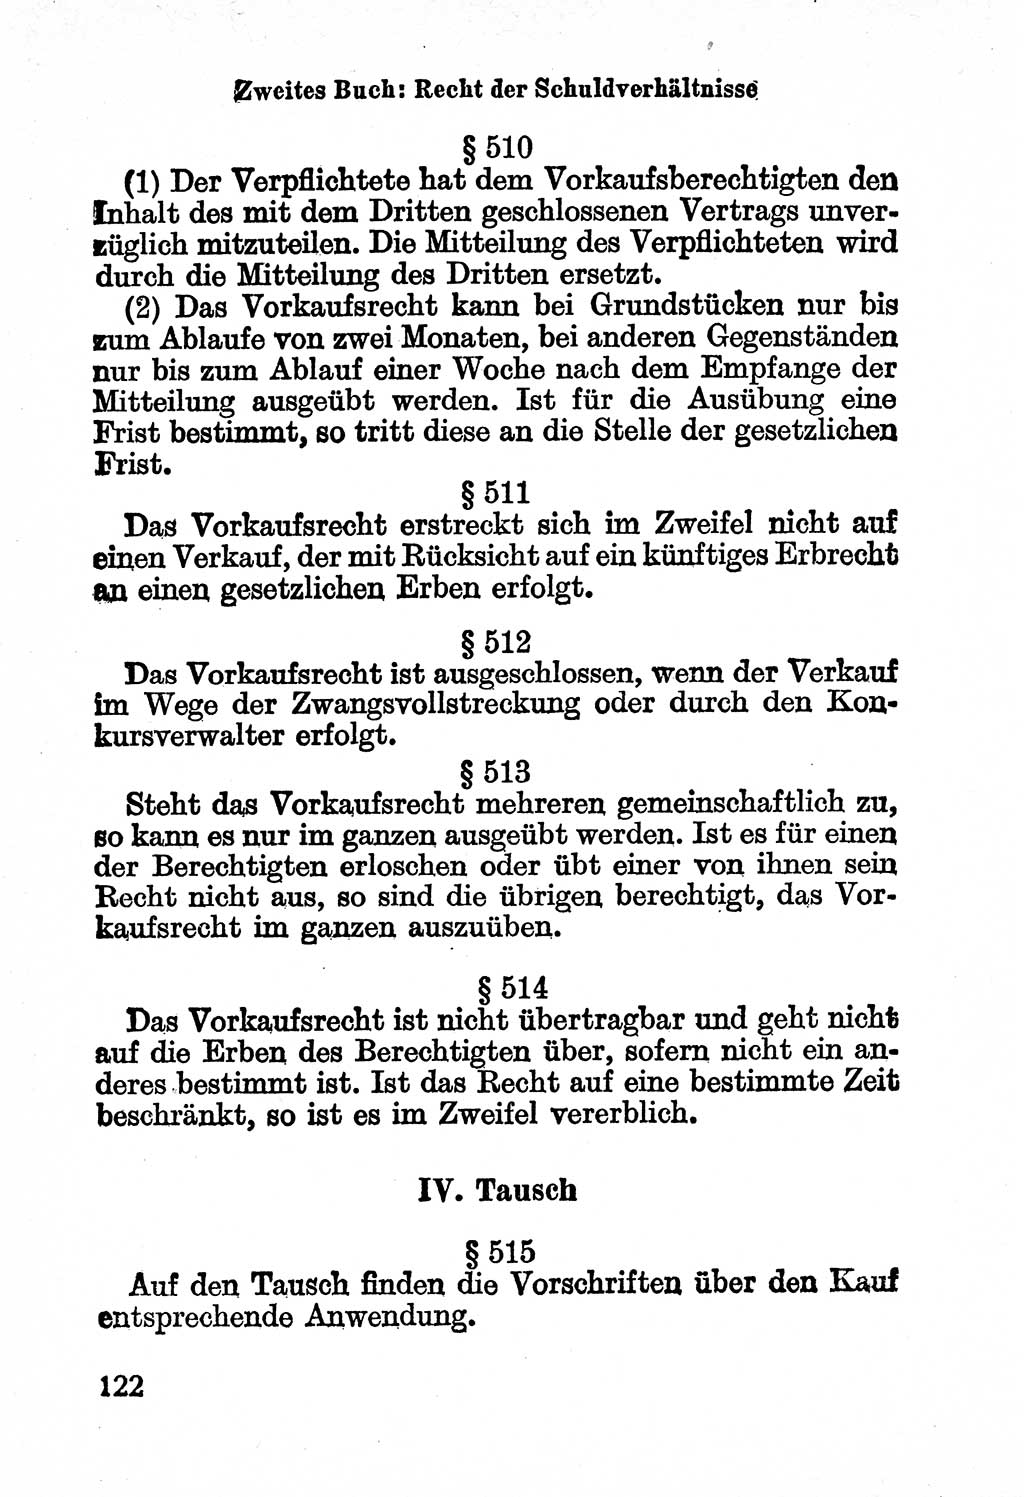 Bürgerliches Gesetzbuch (BGB) nebst wichtigen Nebengesetzen [Deutsche Demokratische Republik (DDR)] 1956, Seite 122 (BGB Nebenges. DDR 1956, S. 122)